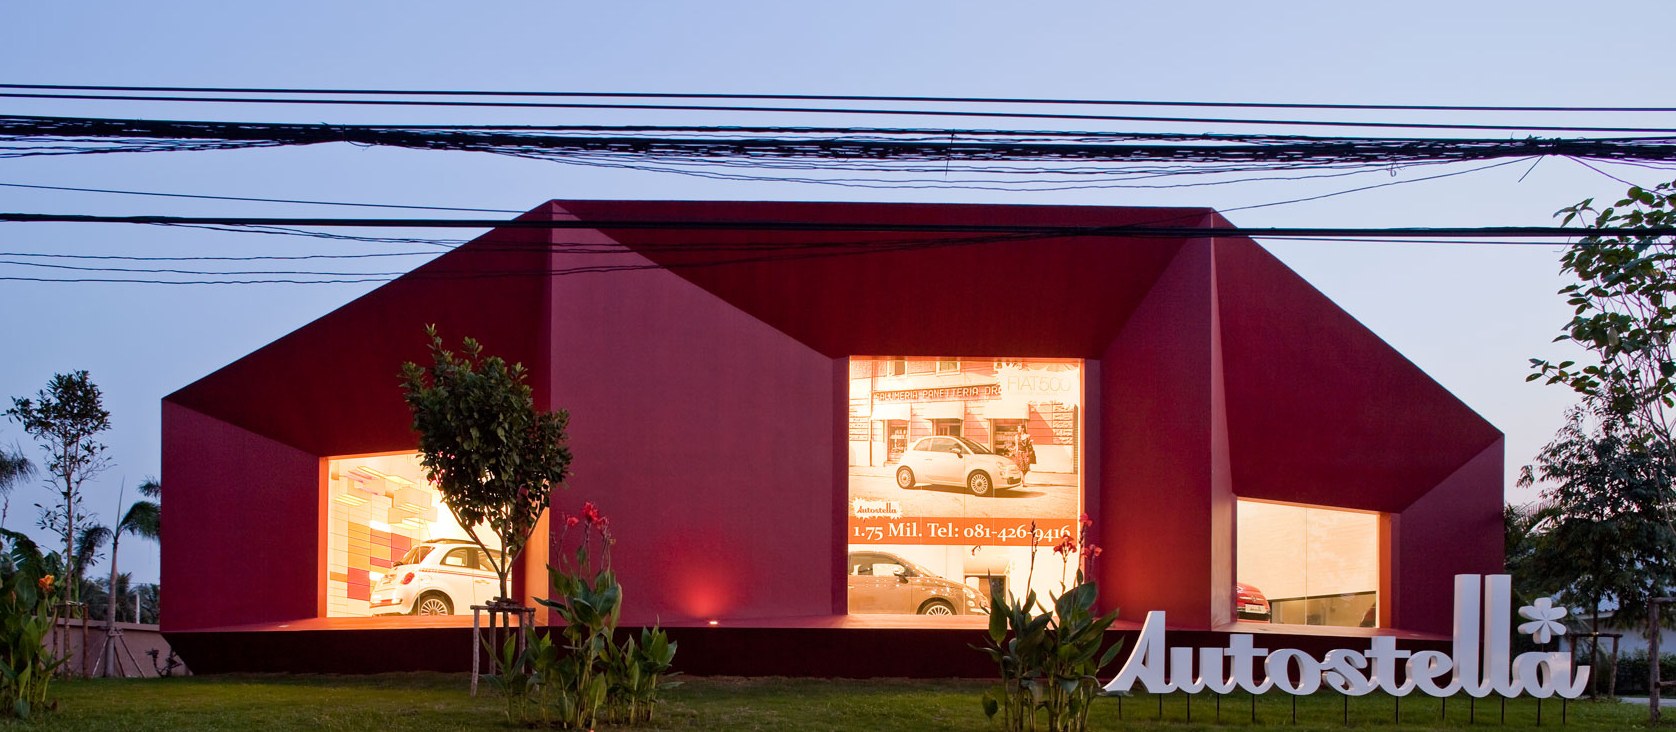 泰国曼谷Autostella汽车展厅